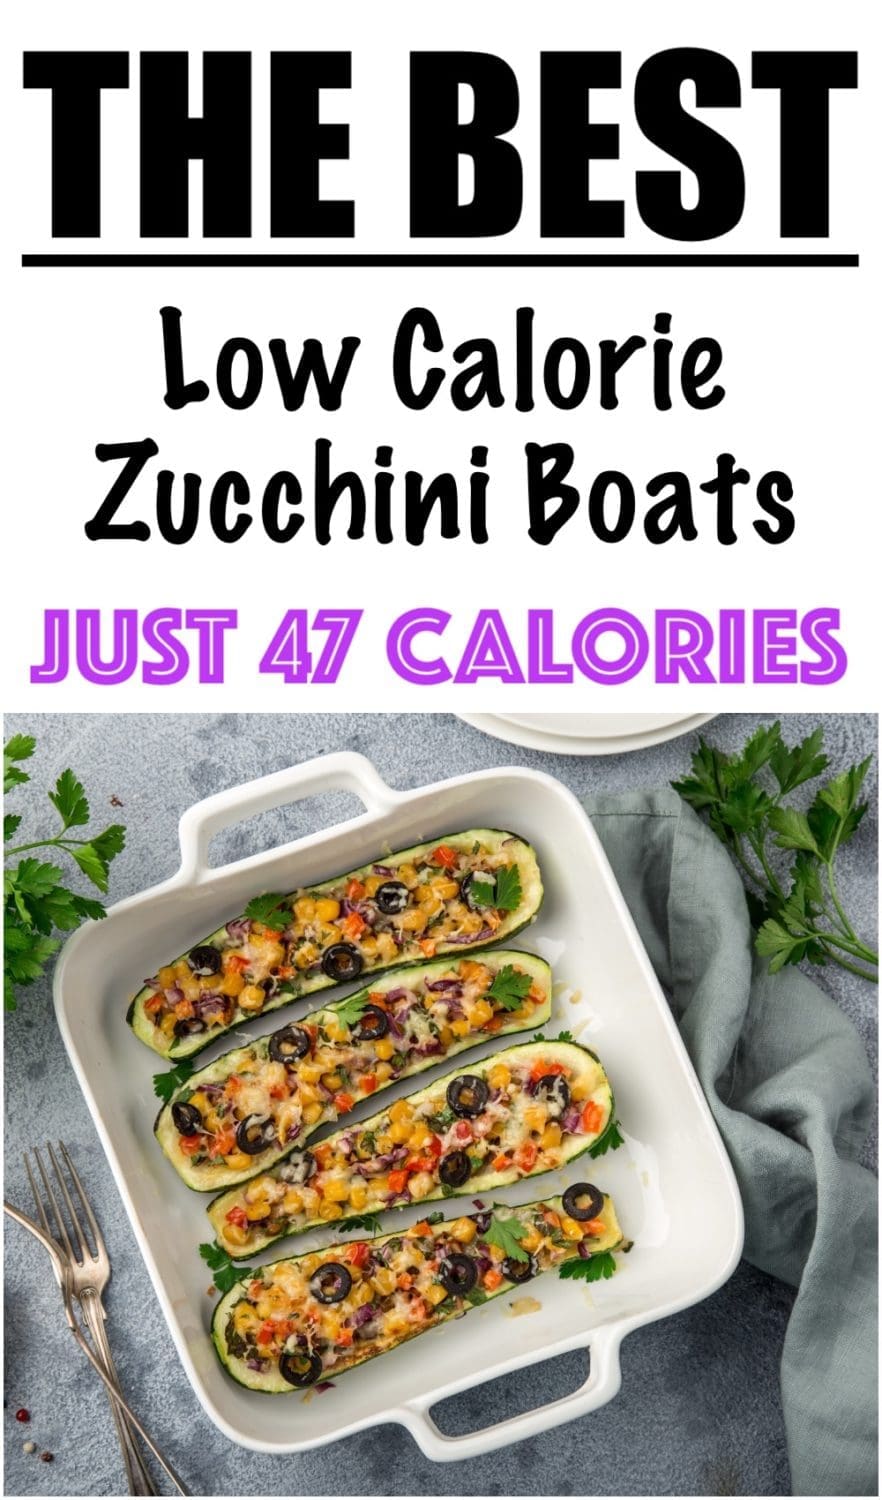 Baked Stuffed Zucchini Boats